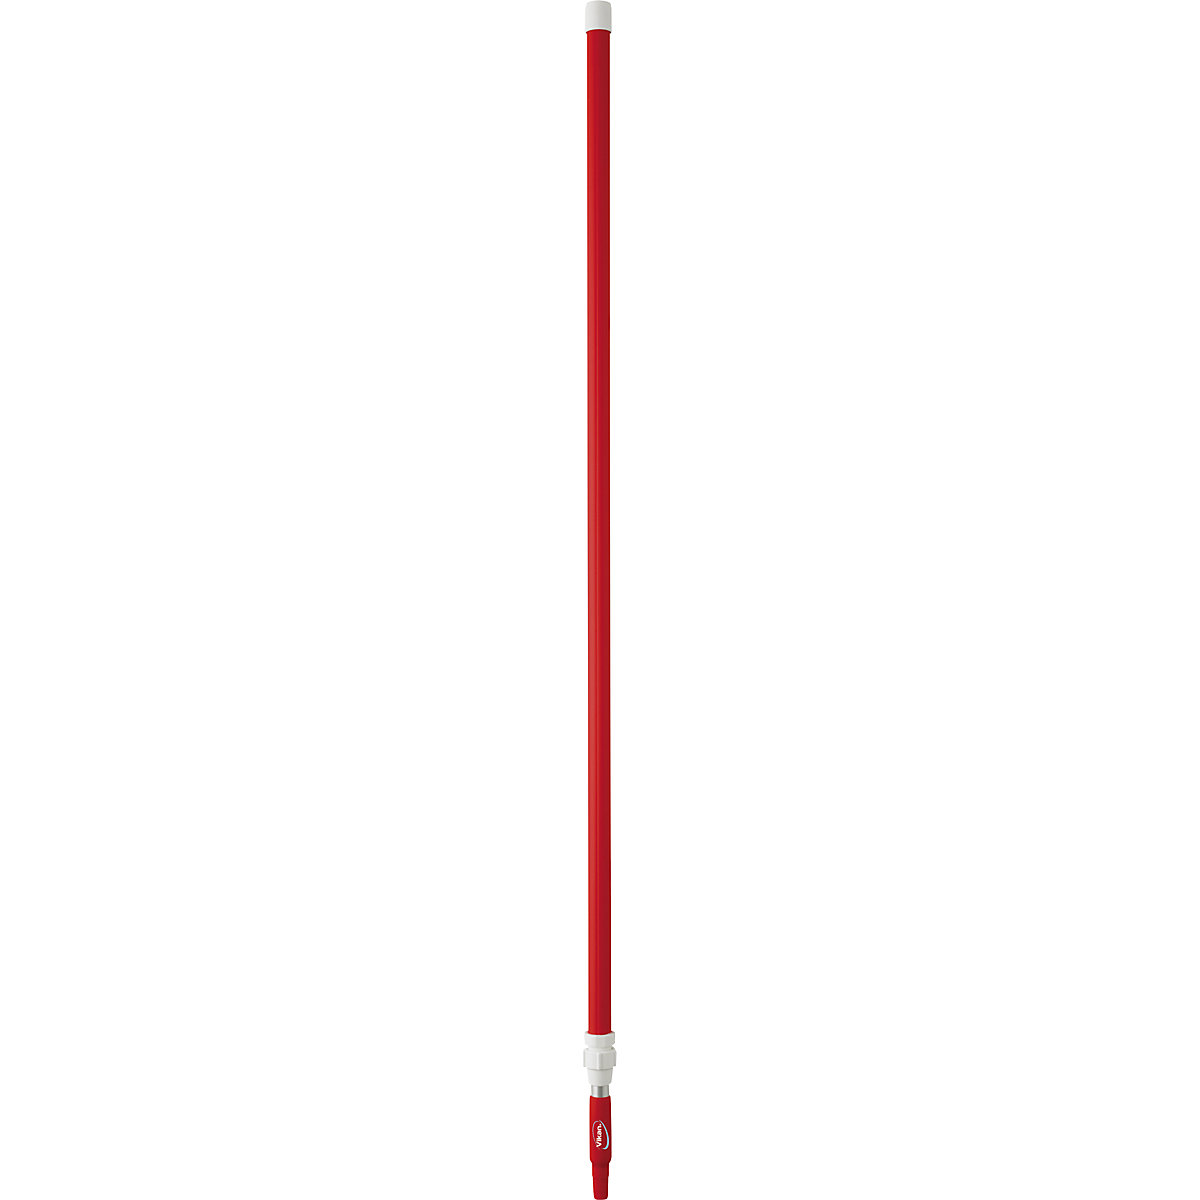 Teleskopska drška, ergonomična – Vikan, Ø 32 mm, dužina 1575 mm – 2780 mm, pak. 5 kom., u crvenoj boji